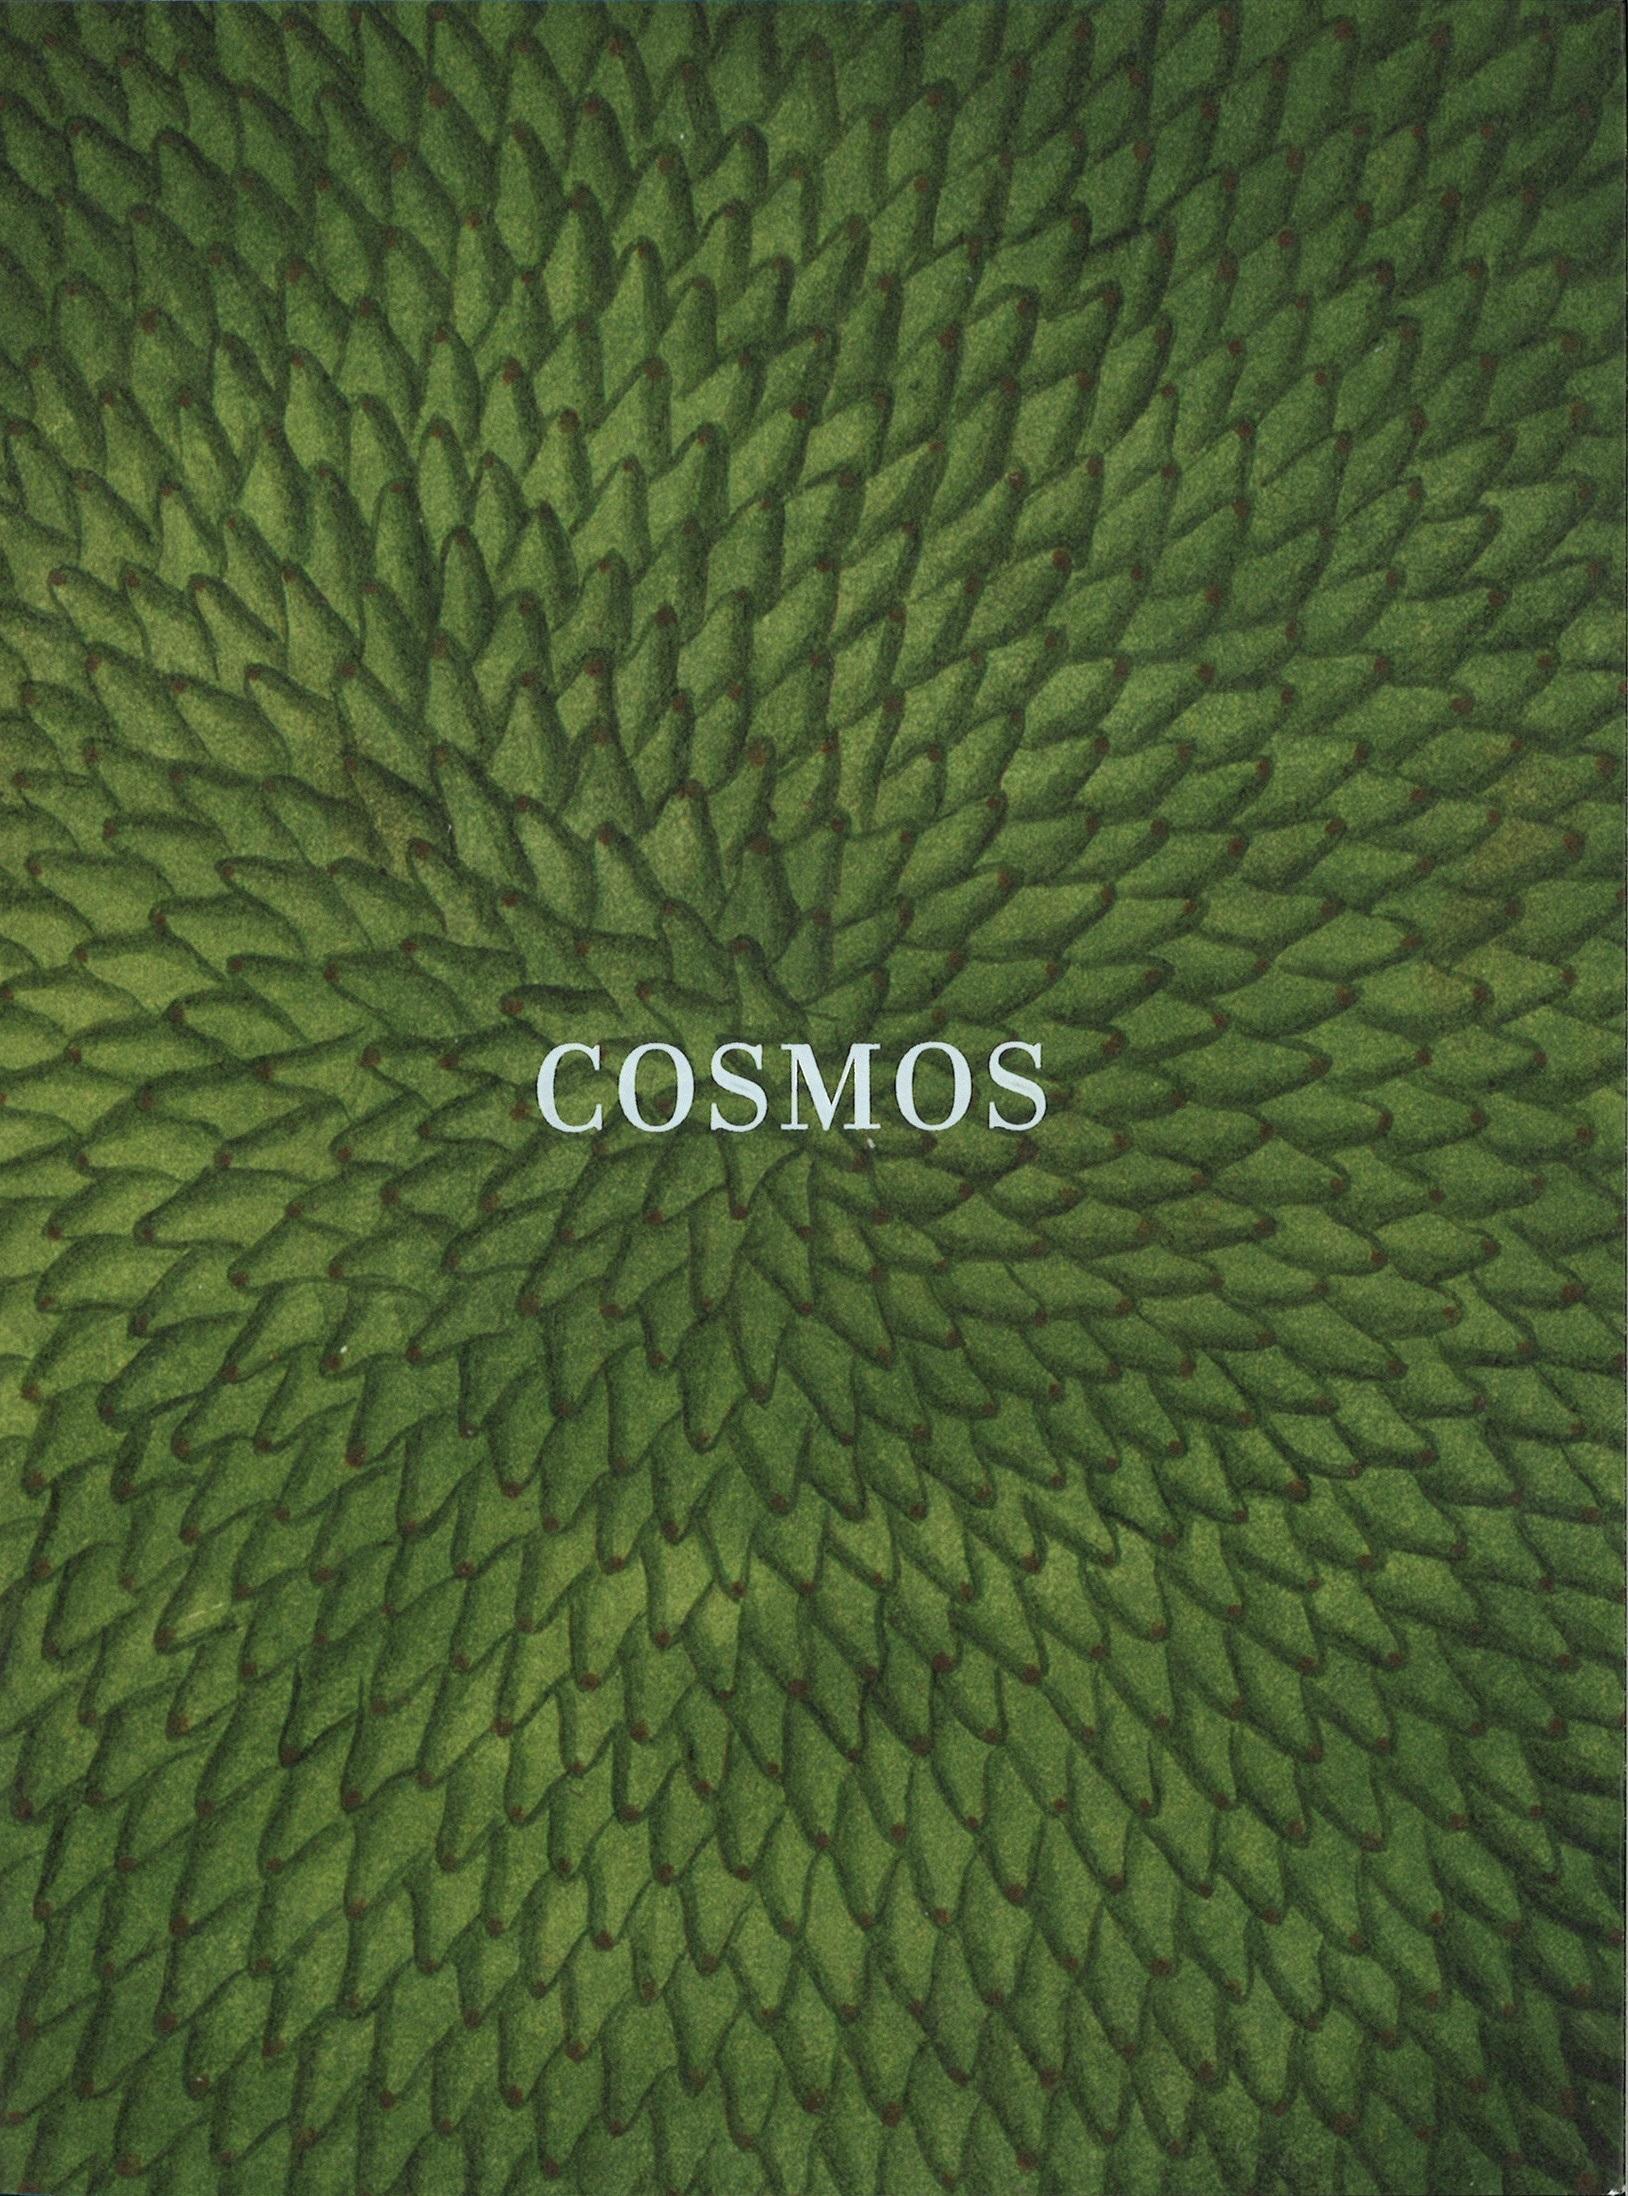 Cosmos "Catálogo Exposición Biblioteca Nacional 2018 AGOTADO EJEMPLAR NUEVO"